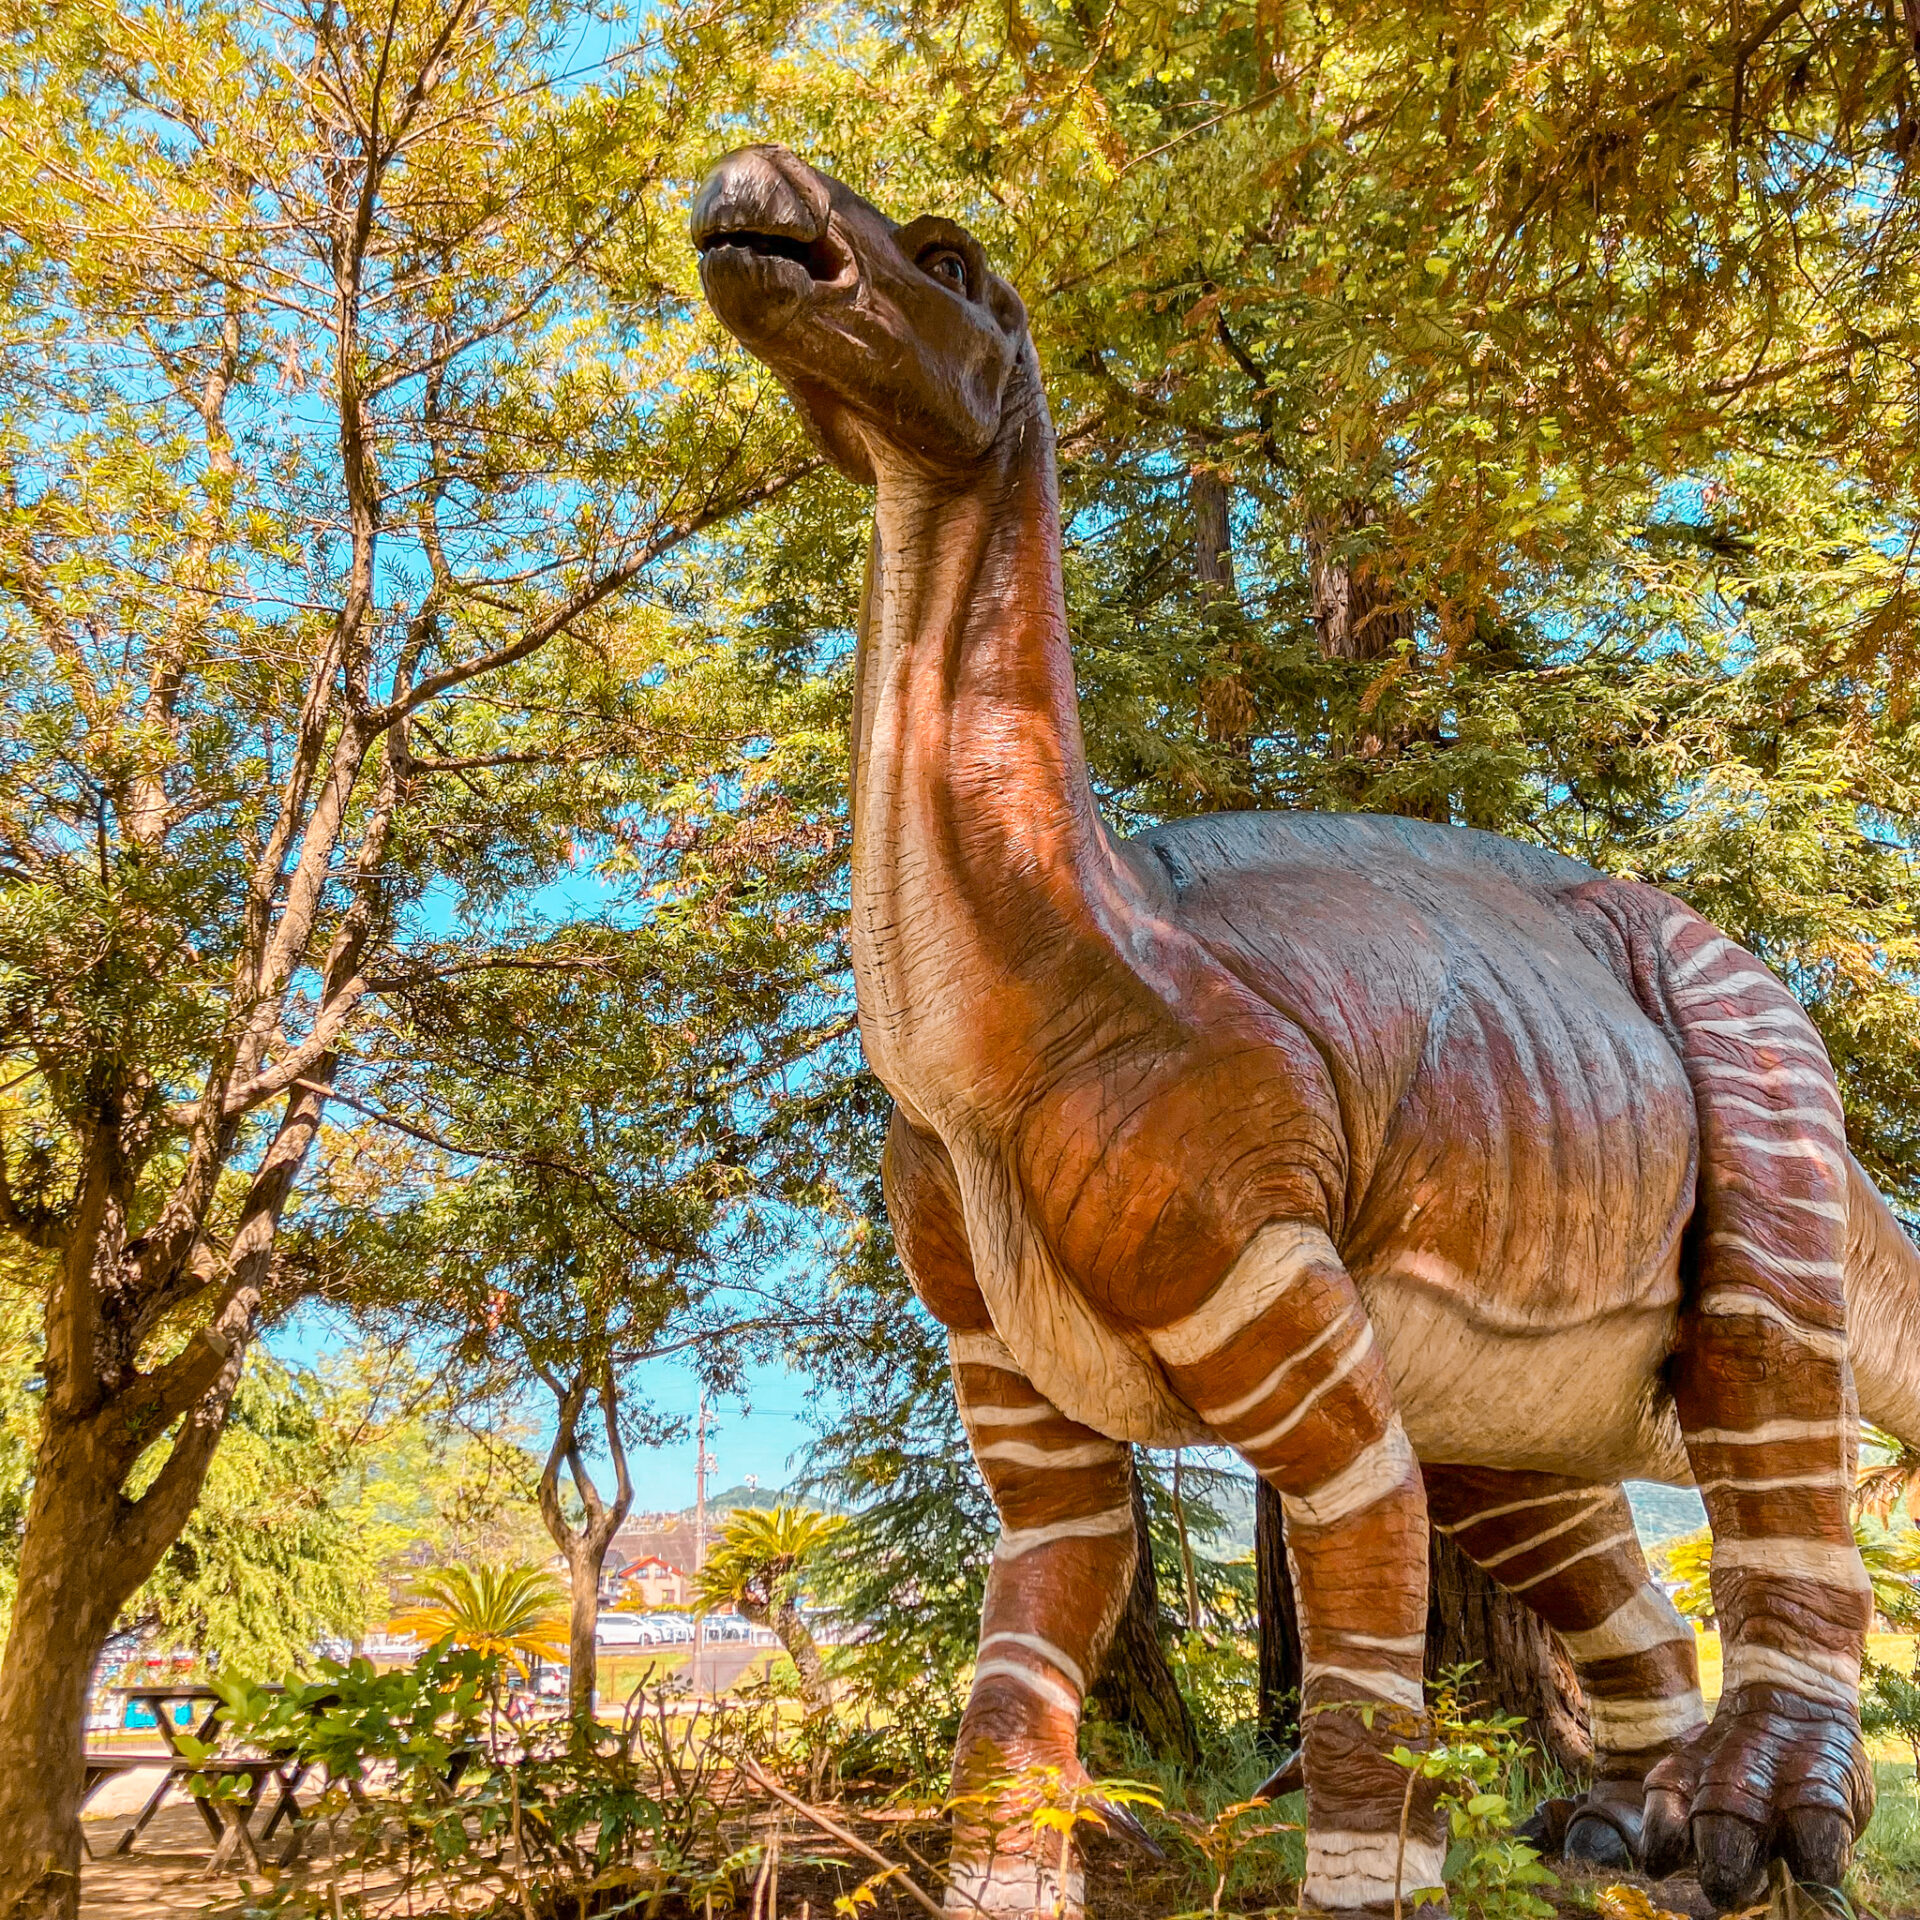 恐竜公園
恐竜４